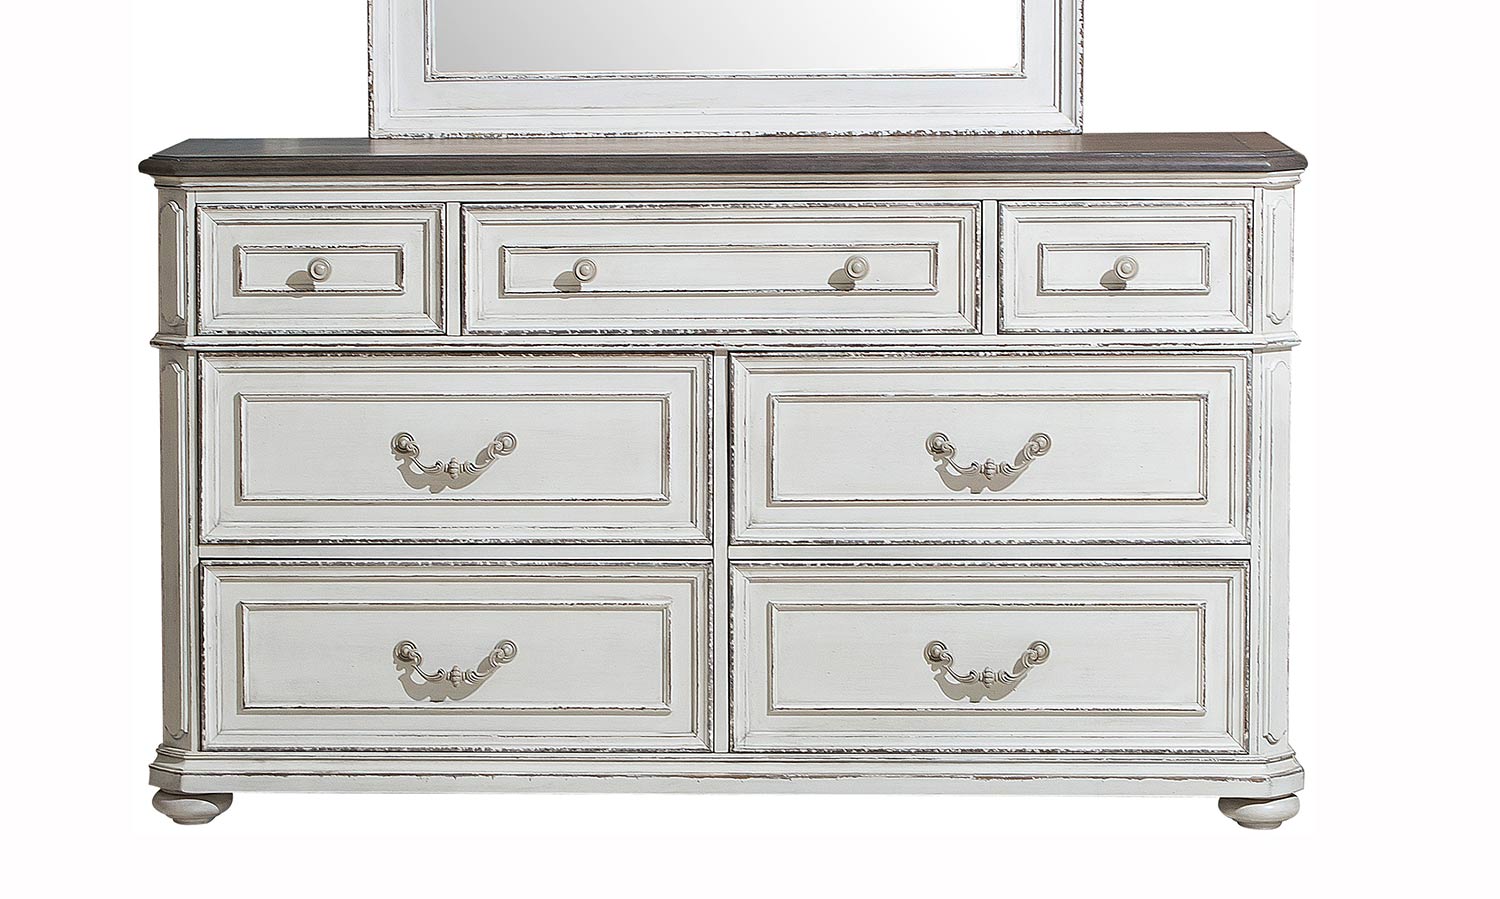 Homelegance Willowick Dresser - Antique White